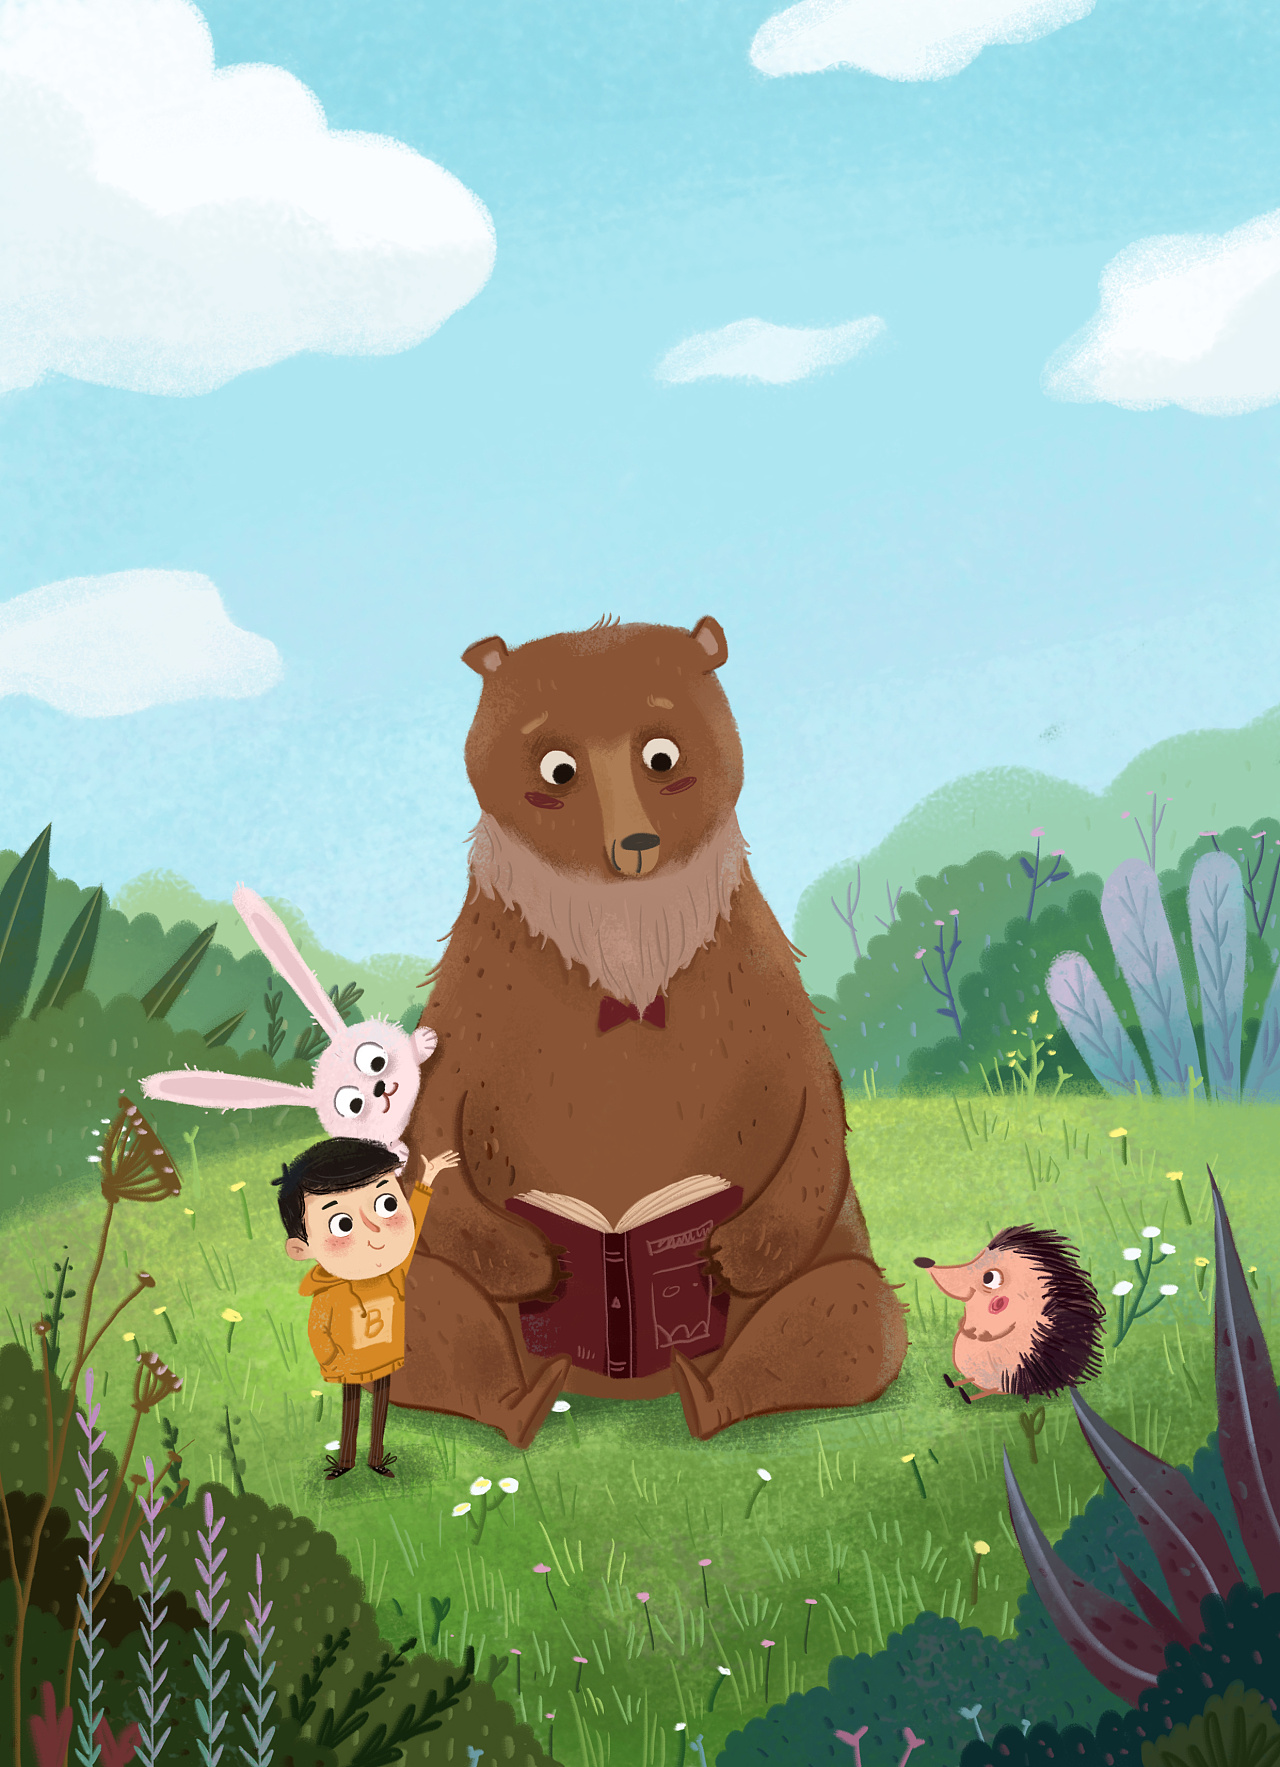 多胎时代 俄罗斯动画片《玛莎和熊》破题孩子“争宠“的另类视角-中华新闻